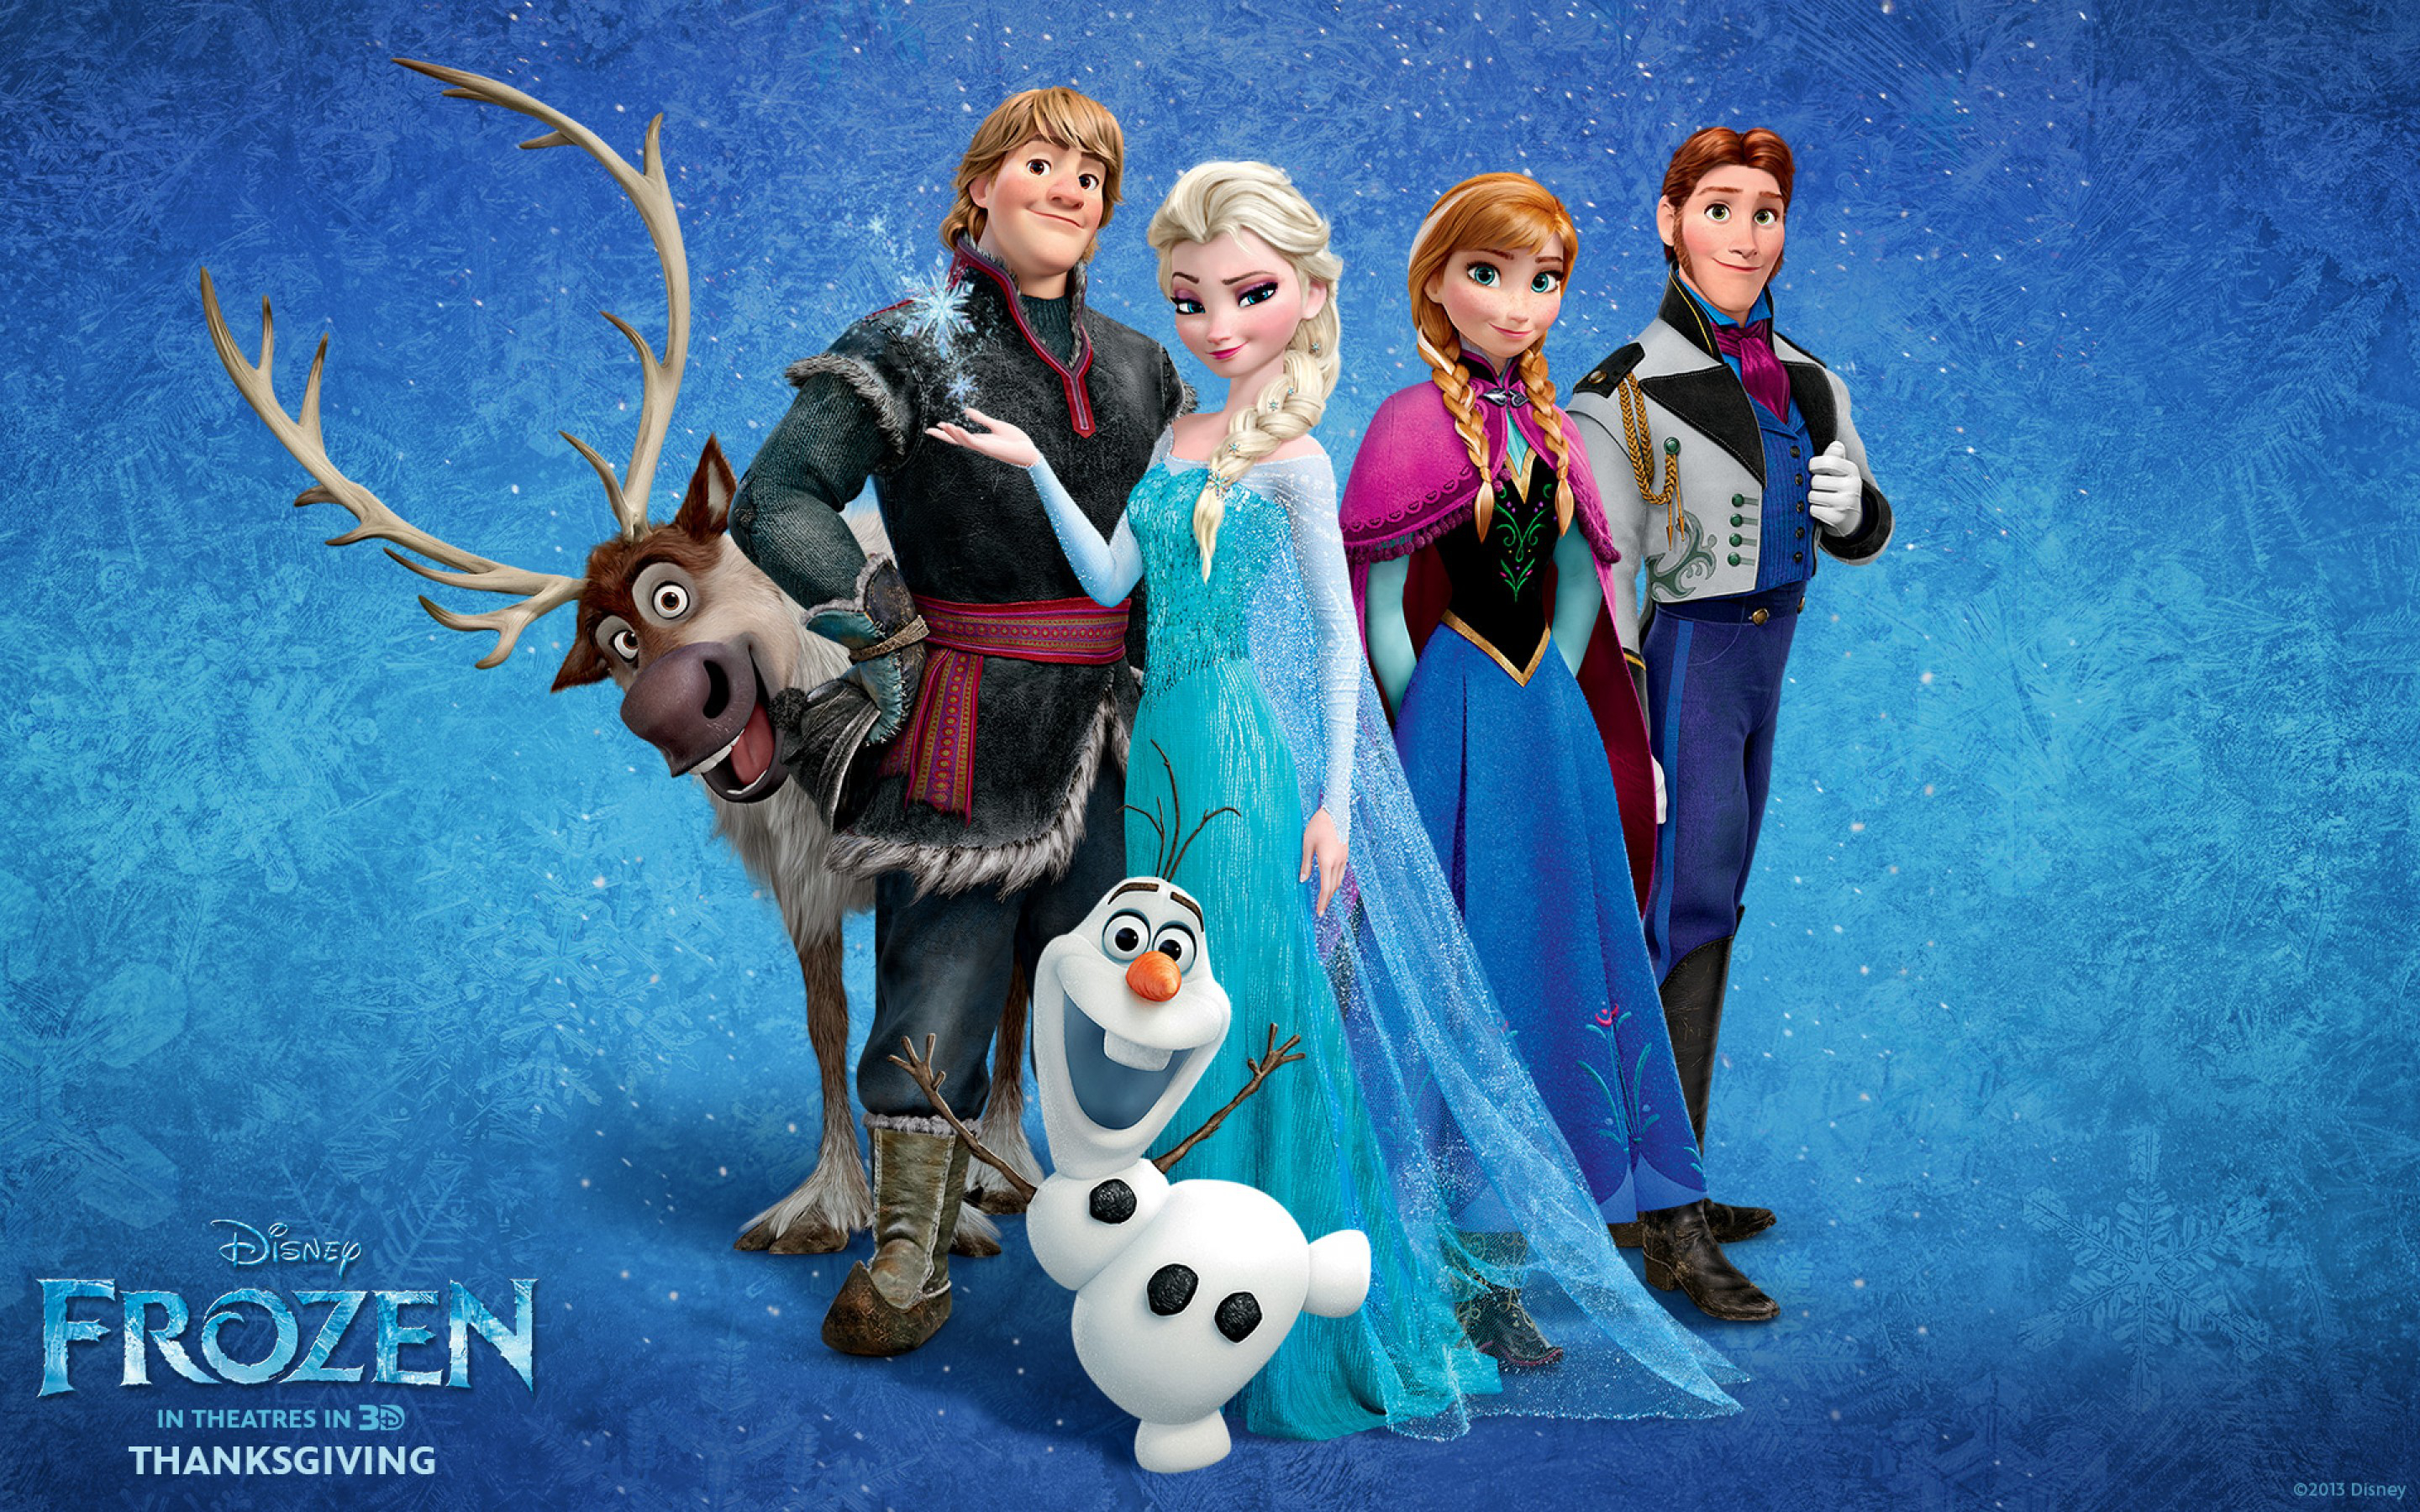 Anna Frozen Elsa Frozen Frozen Movie Hans Frozen Kristoff Frozen Olaf Frozen Sven Frozen 2880x1800